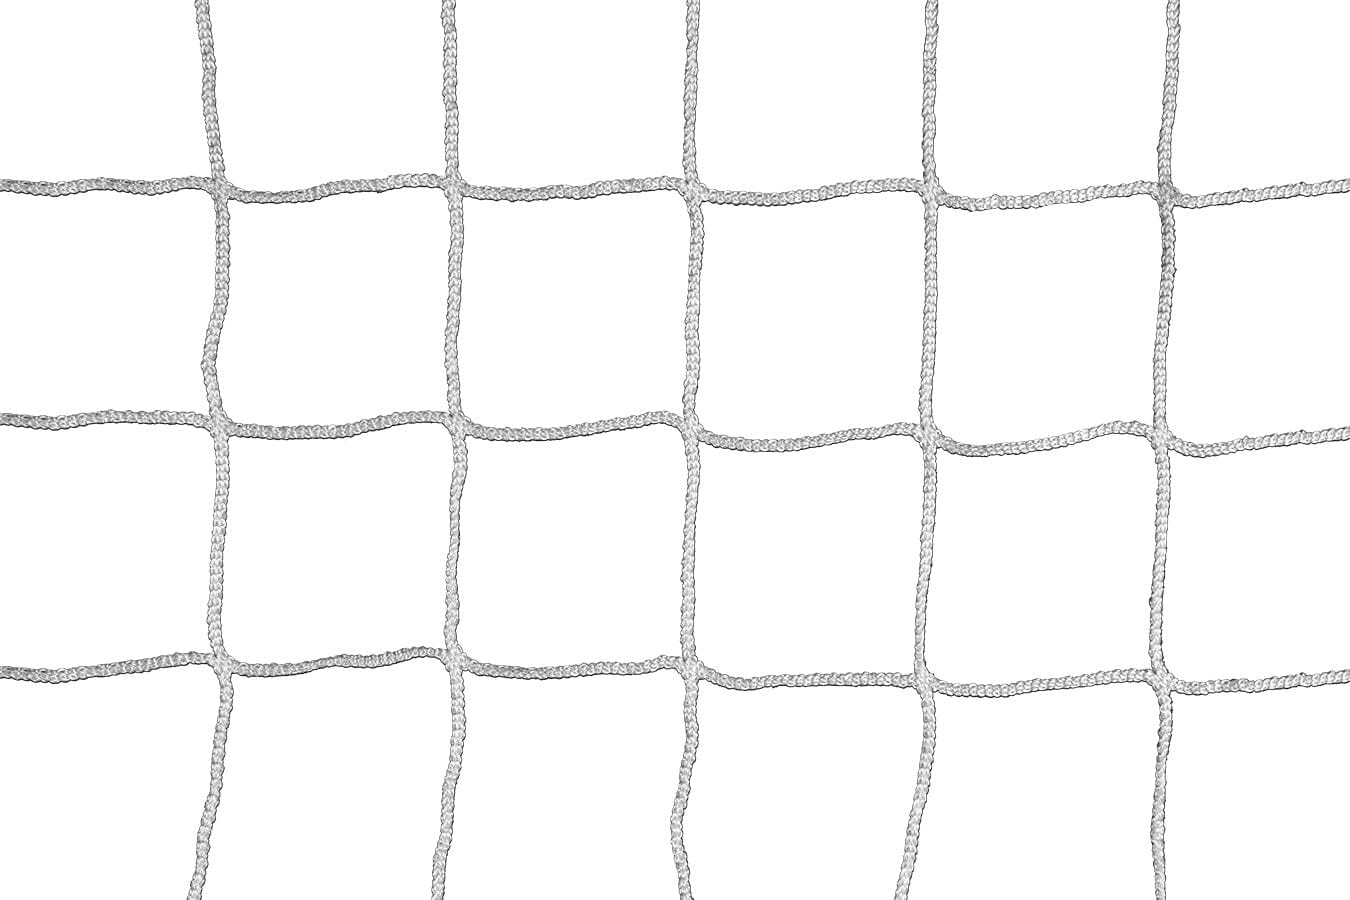 Kwikgoal 3mm Braided Knotless Net | 3B6823 Nets Kwikgoal White 